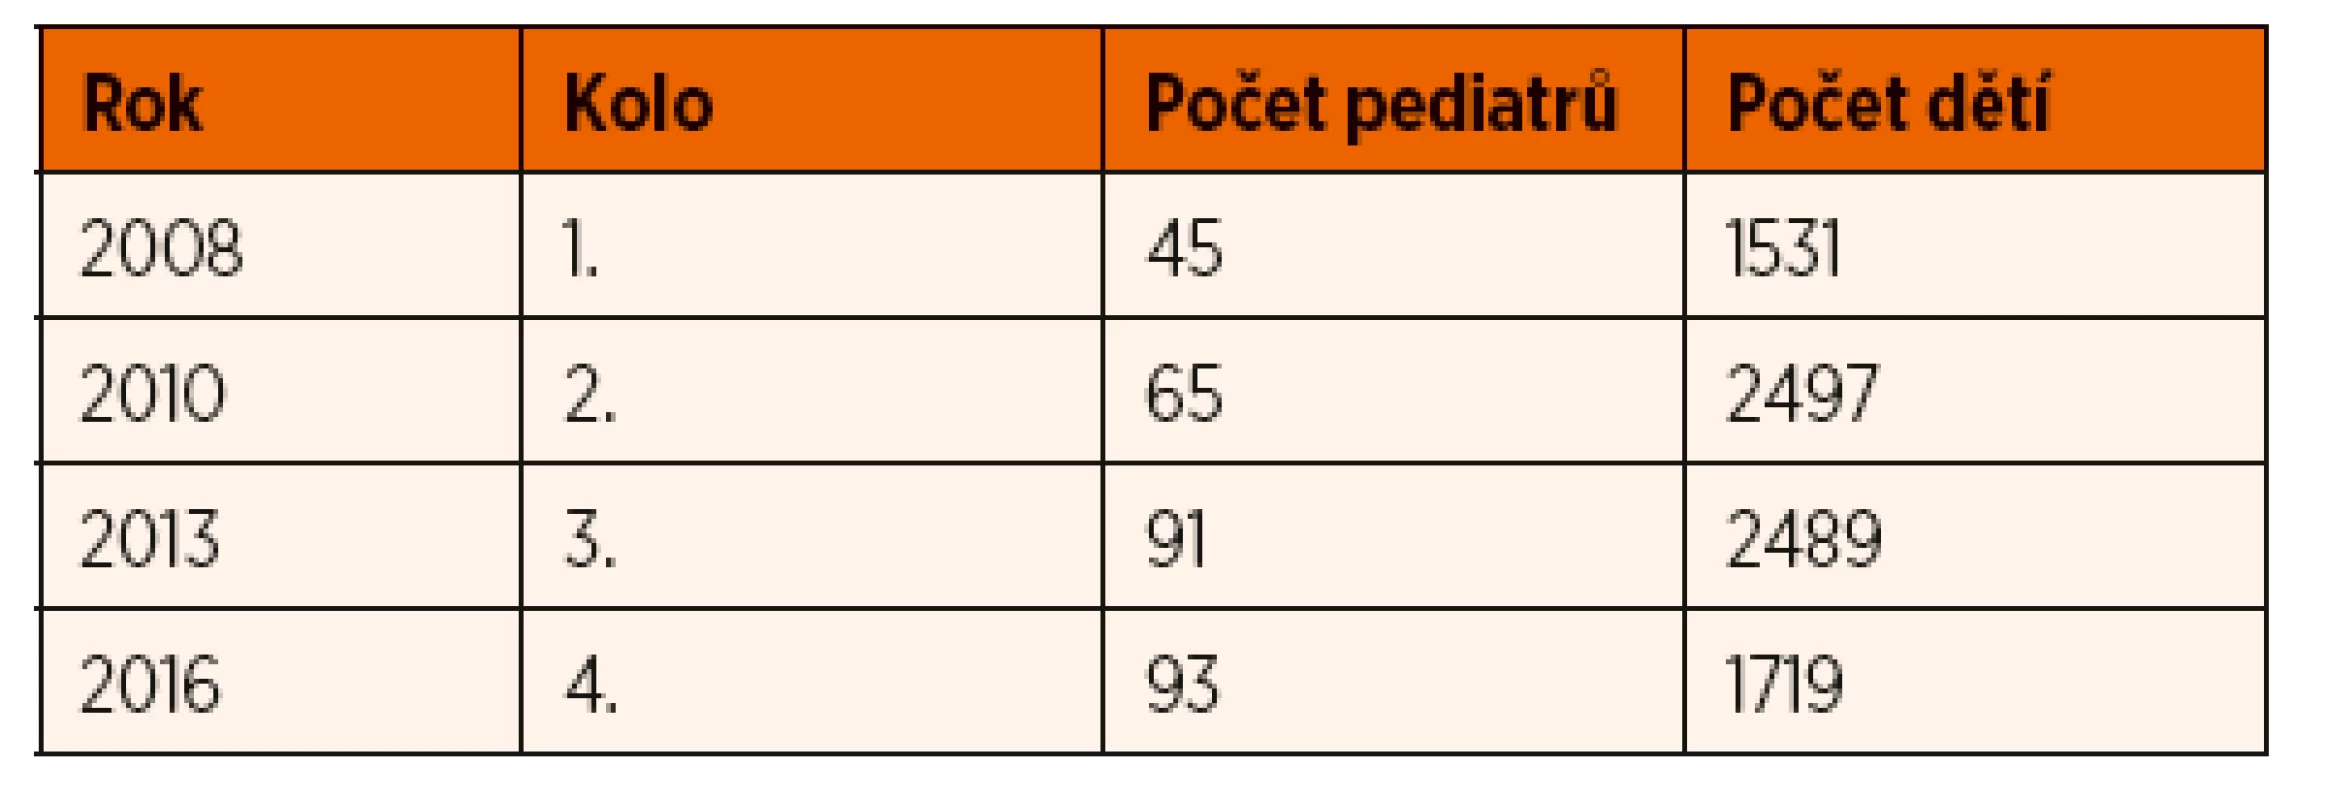 Počet praktických dětských lékařů a dětí v jednotlivých kolech
projektu COSI.